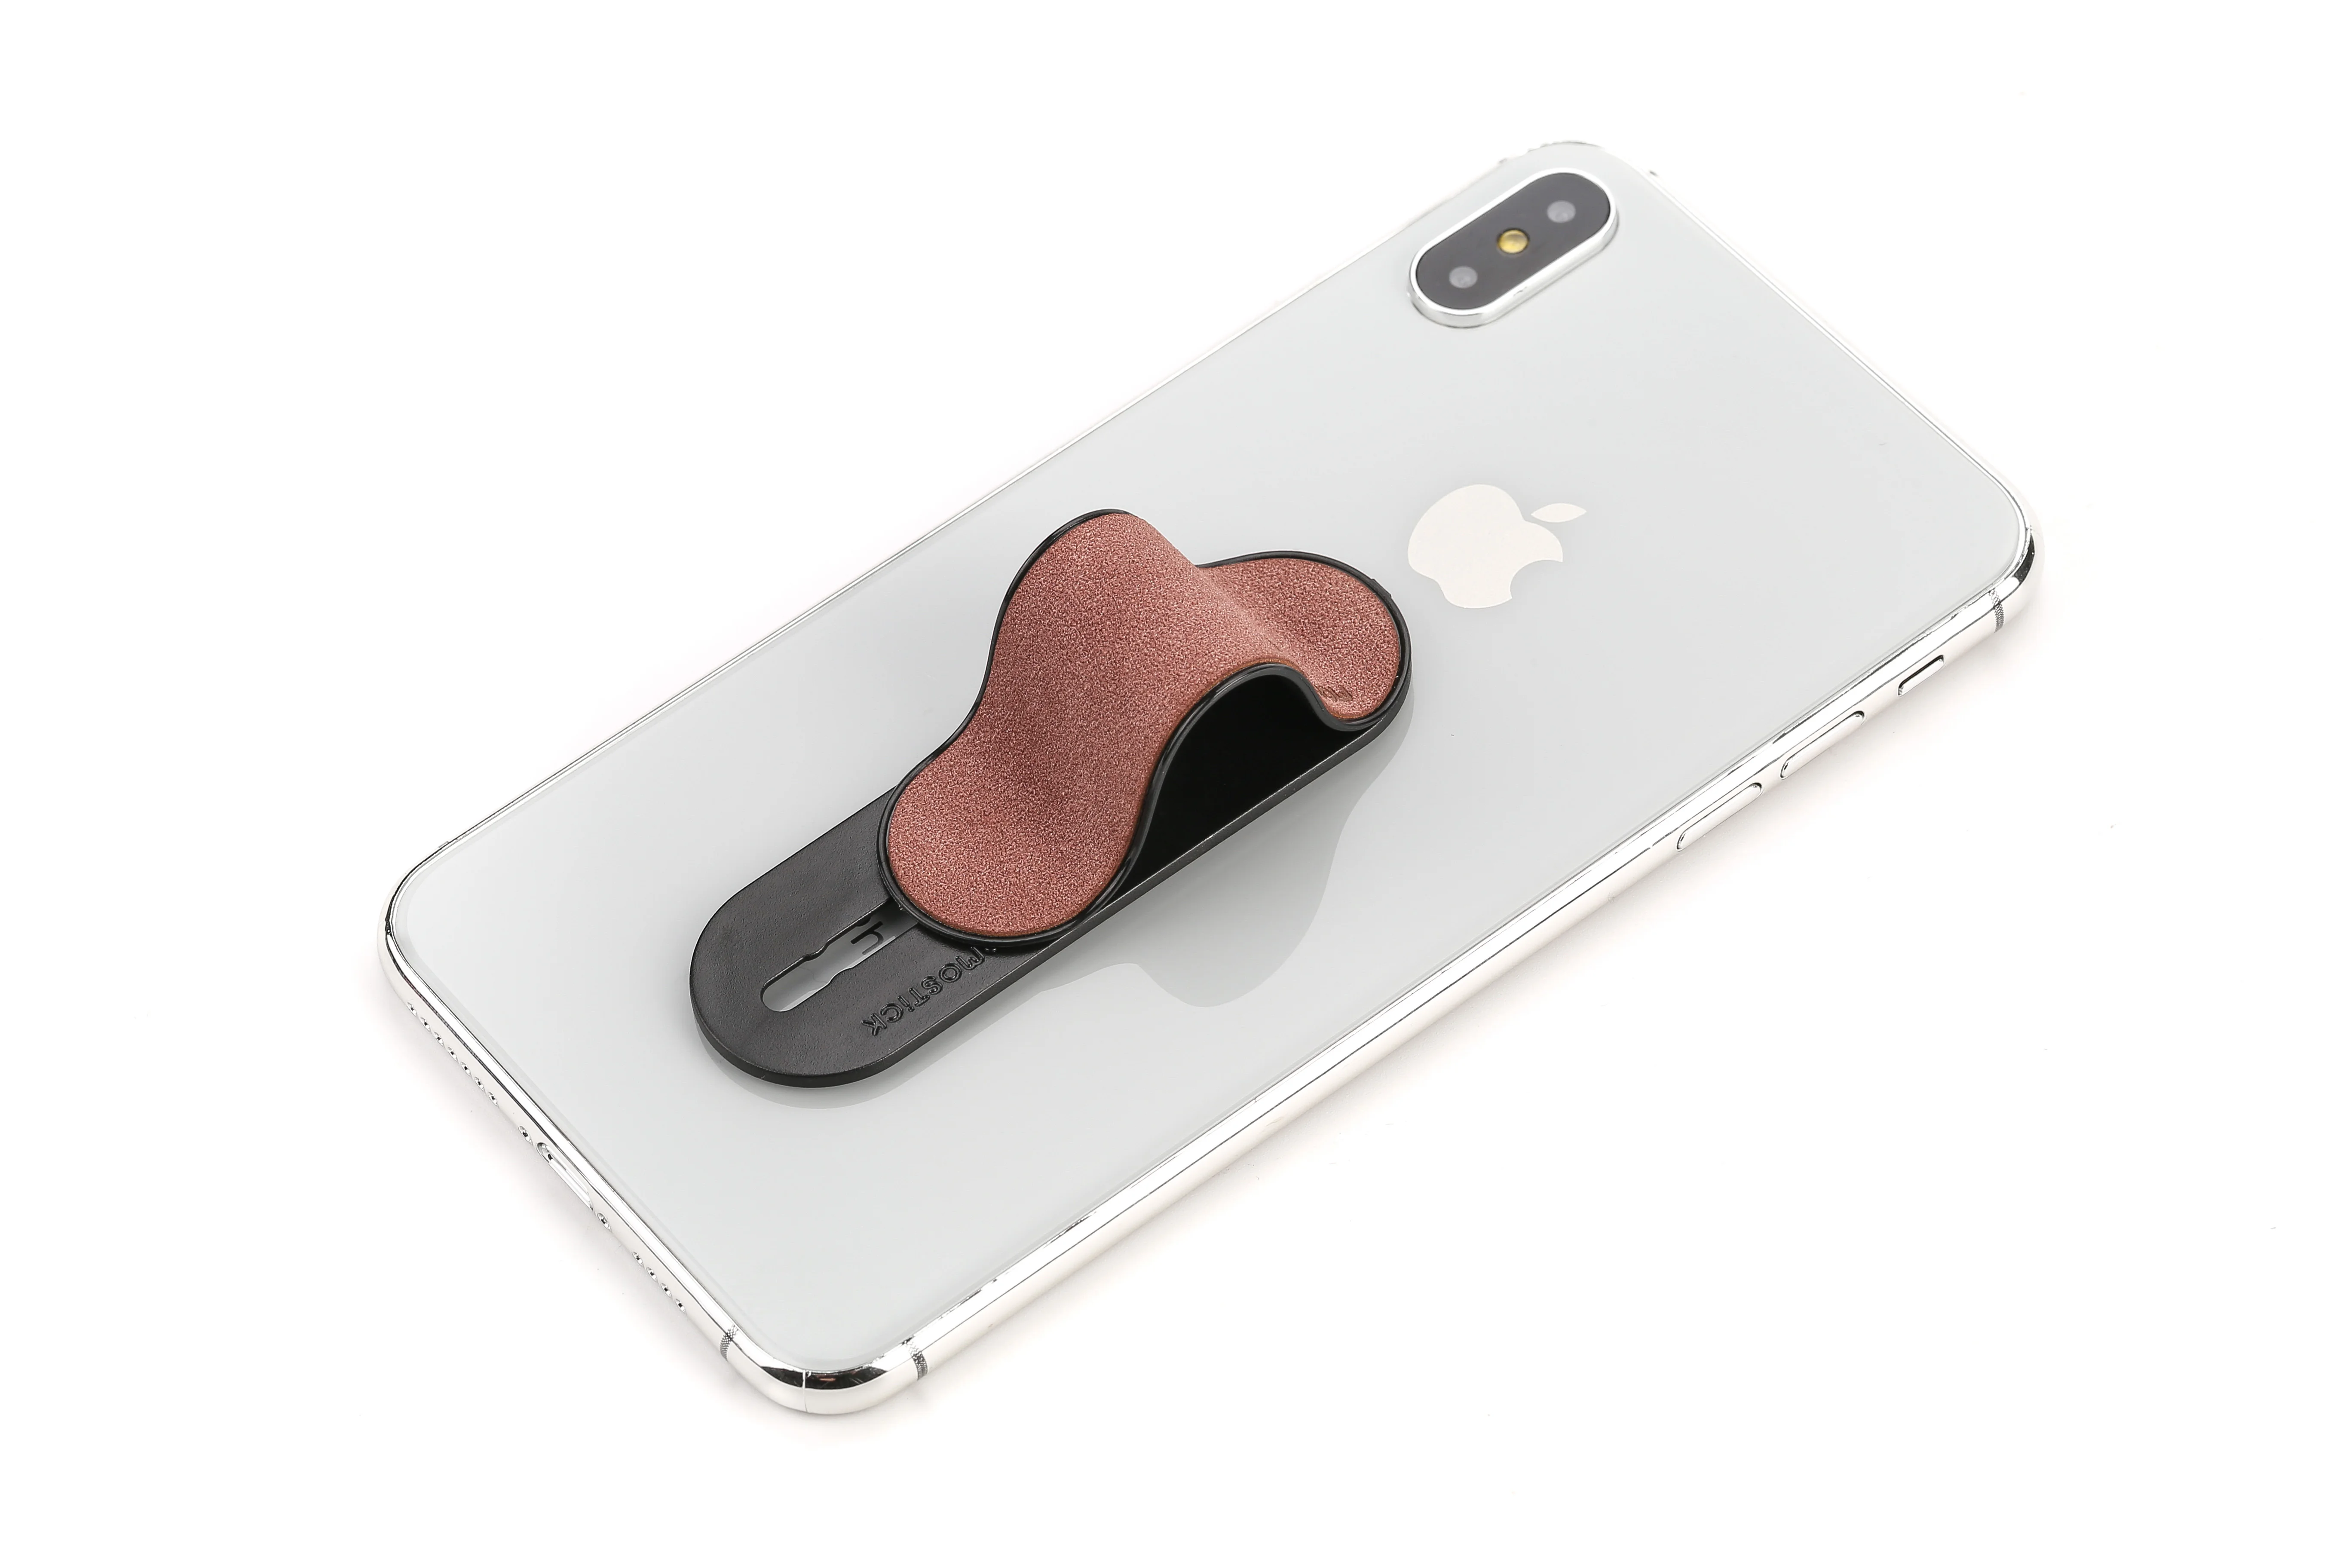 Cell Phone Grip Universal Handheld Finger Strap Loop Holder for iPhone Samsung Smartphone Kindle Tablet Car Vent Holder 